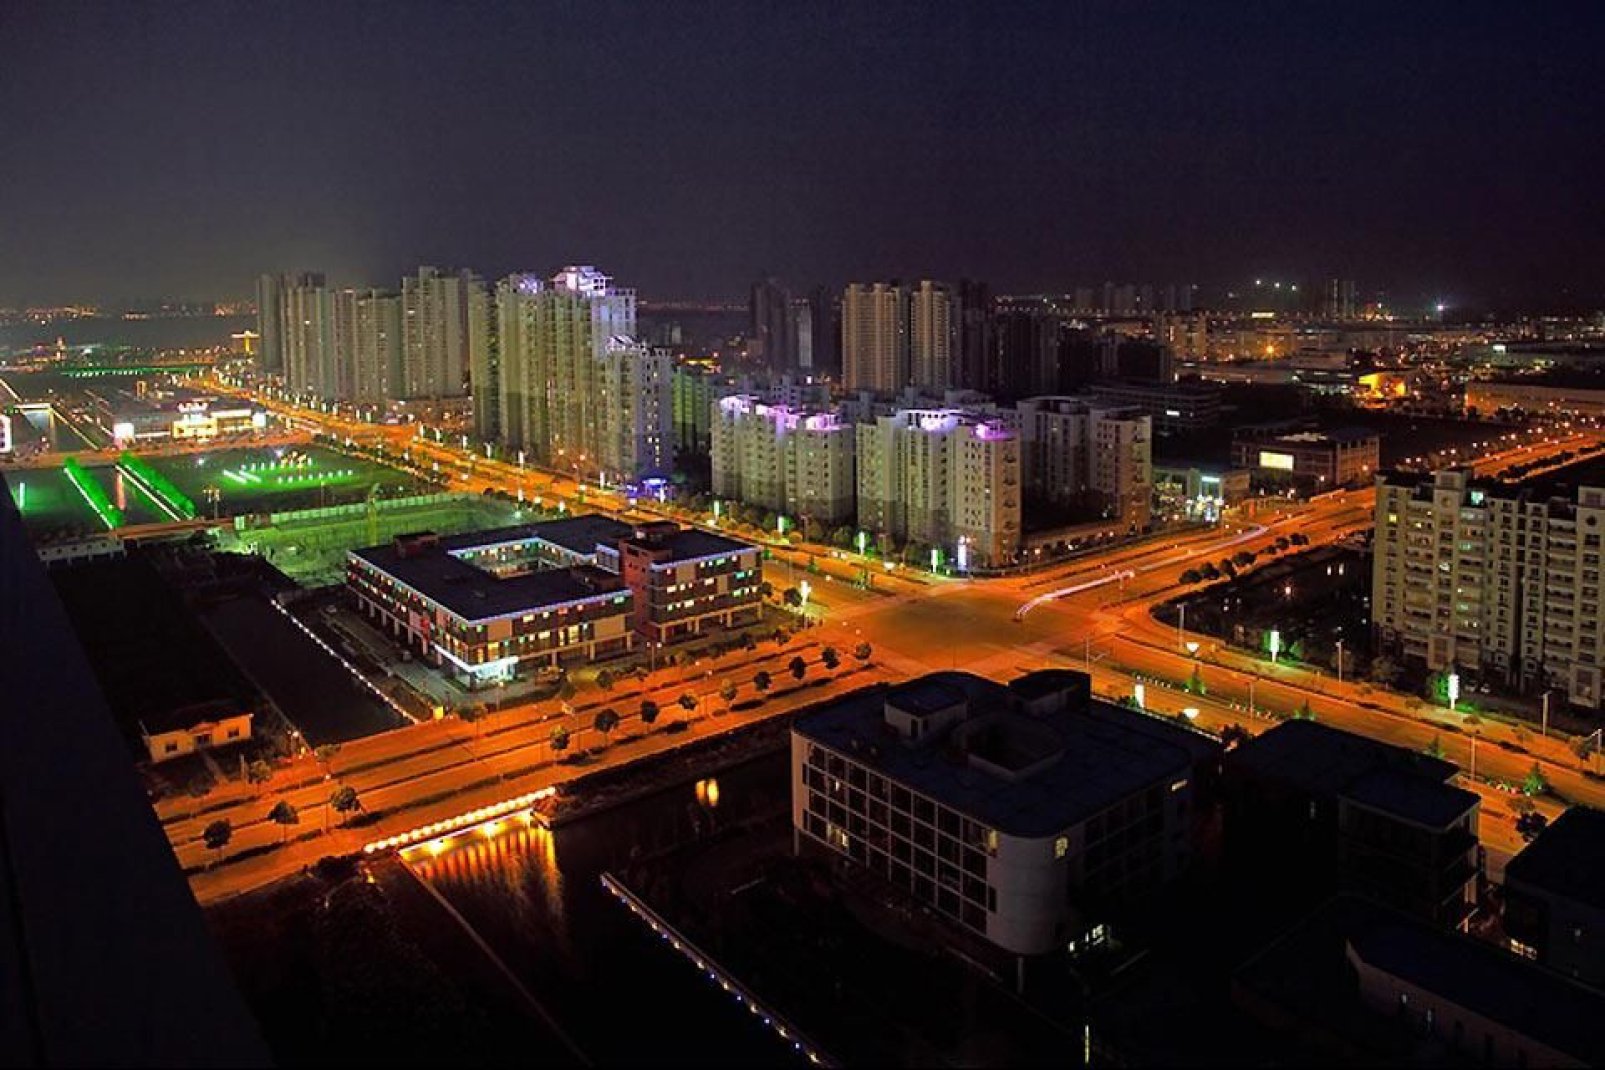 La ciudad de Suzhou iluminada por las luces nocturnas.